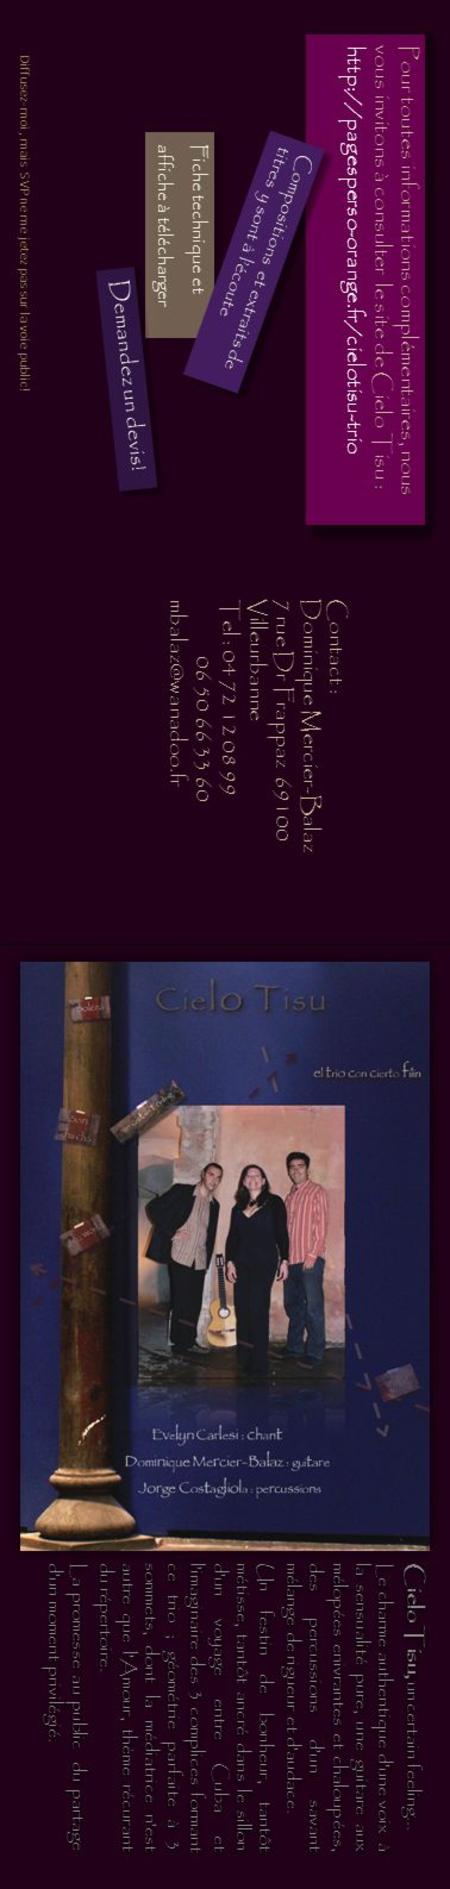 Cielo Tisu, un certain feeling… Le charme authentique dune voix à la sensualité pure, une guitare aux mélopées enivrantes et chaloupées, des percussions.